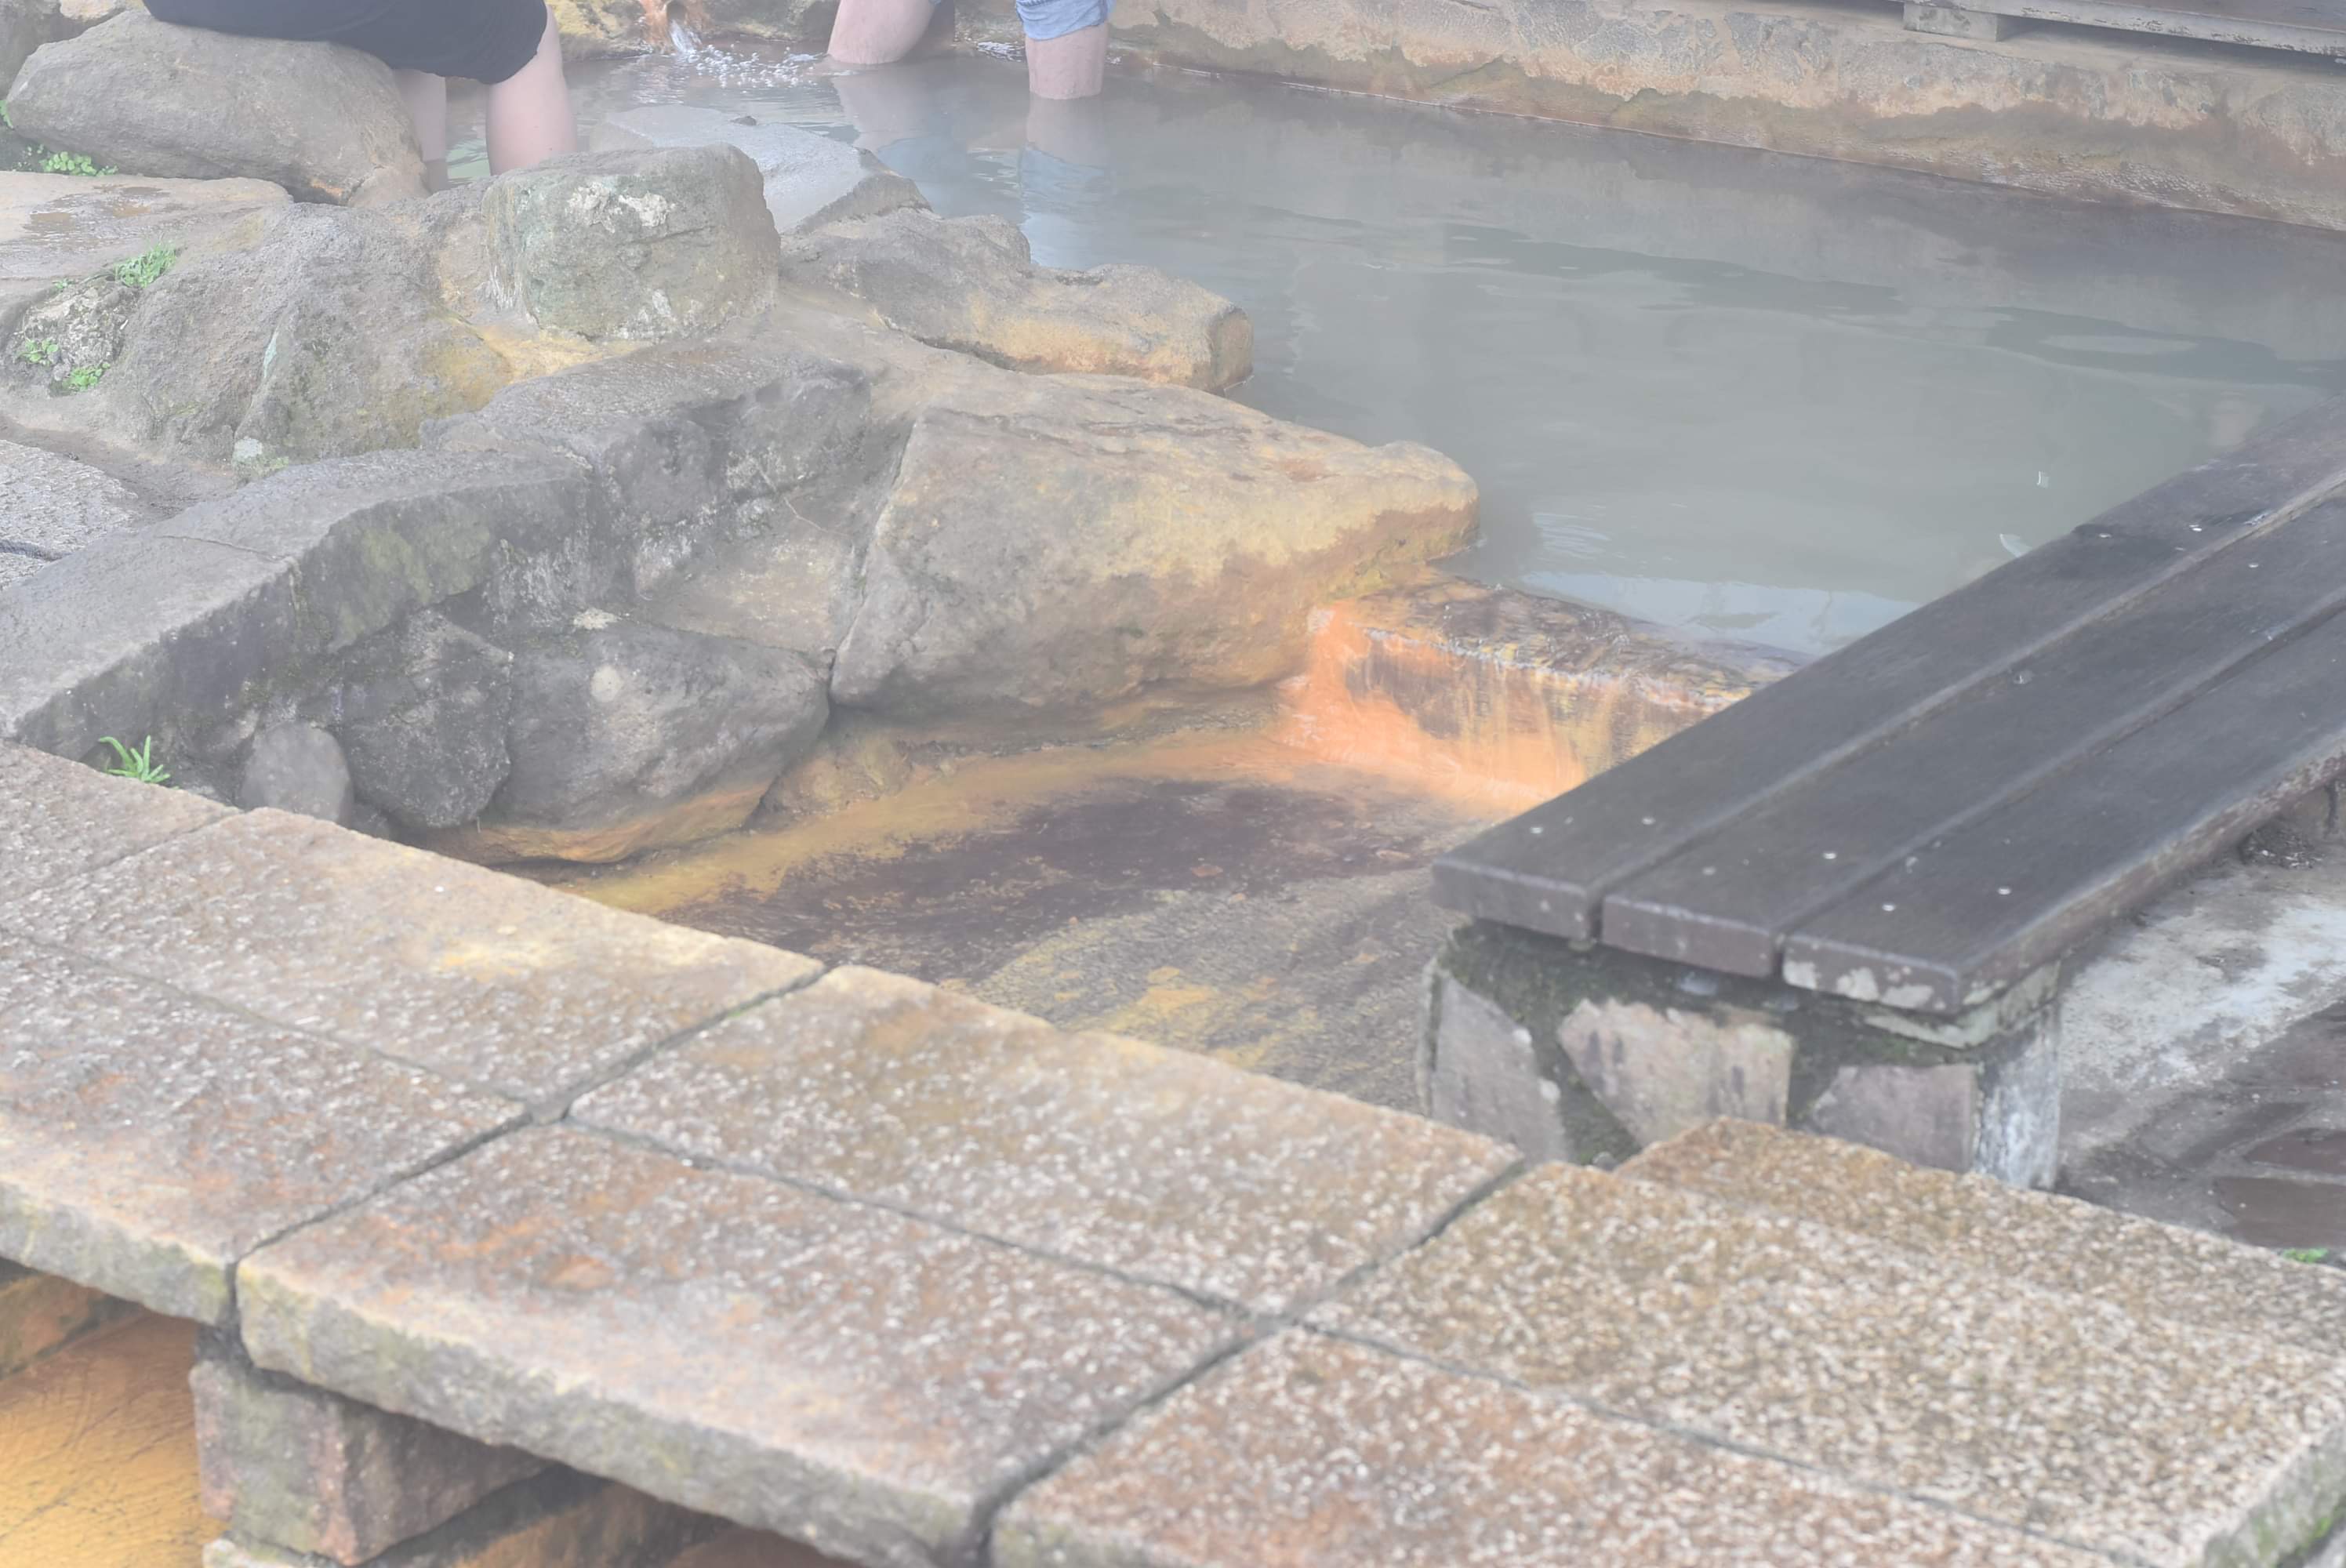 Hot spring in Yangmingshan National Park